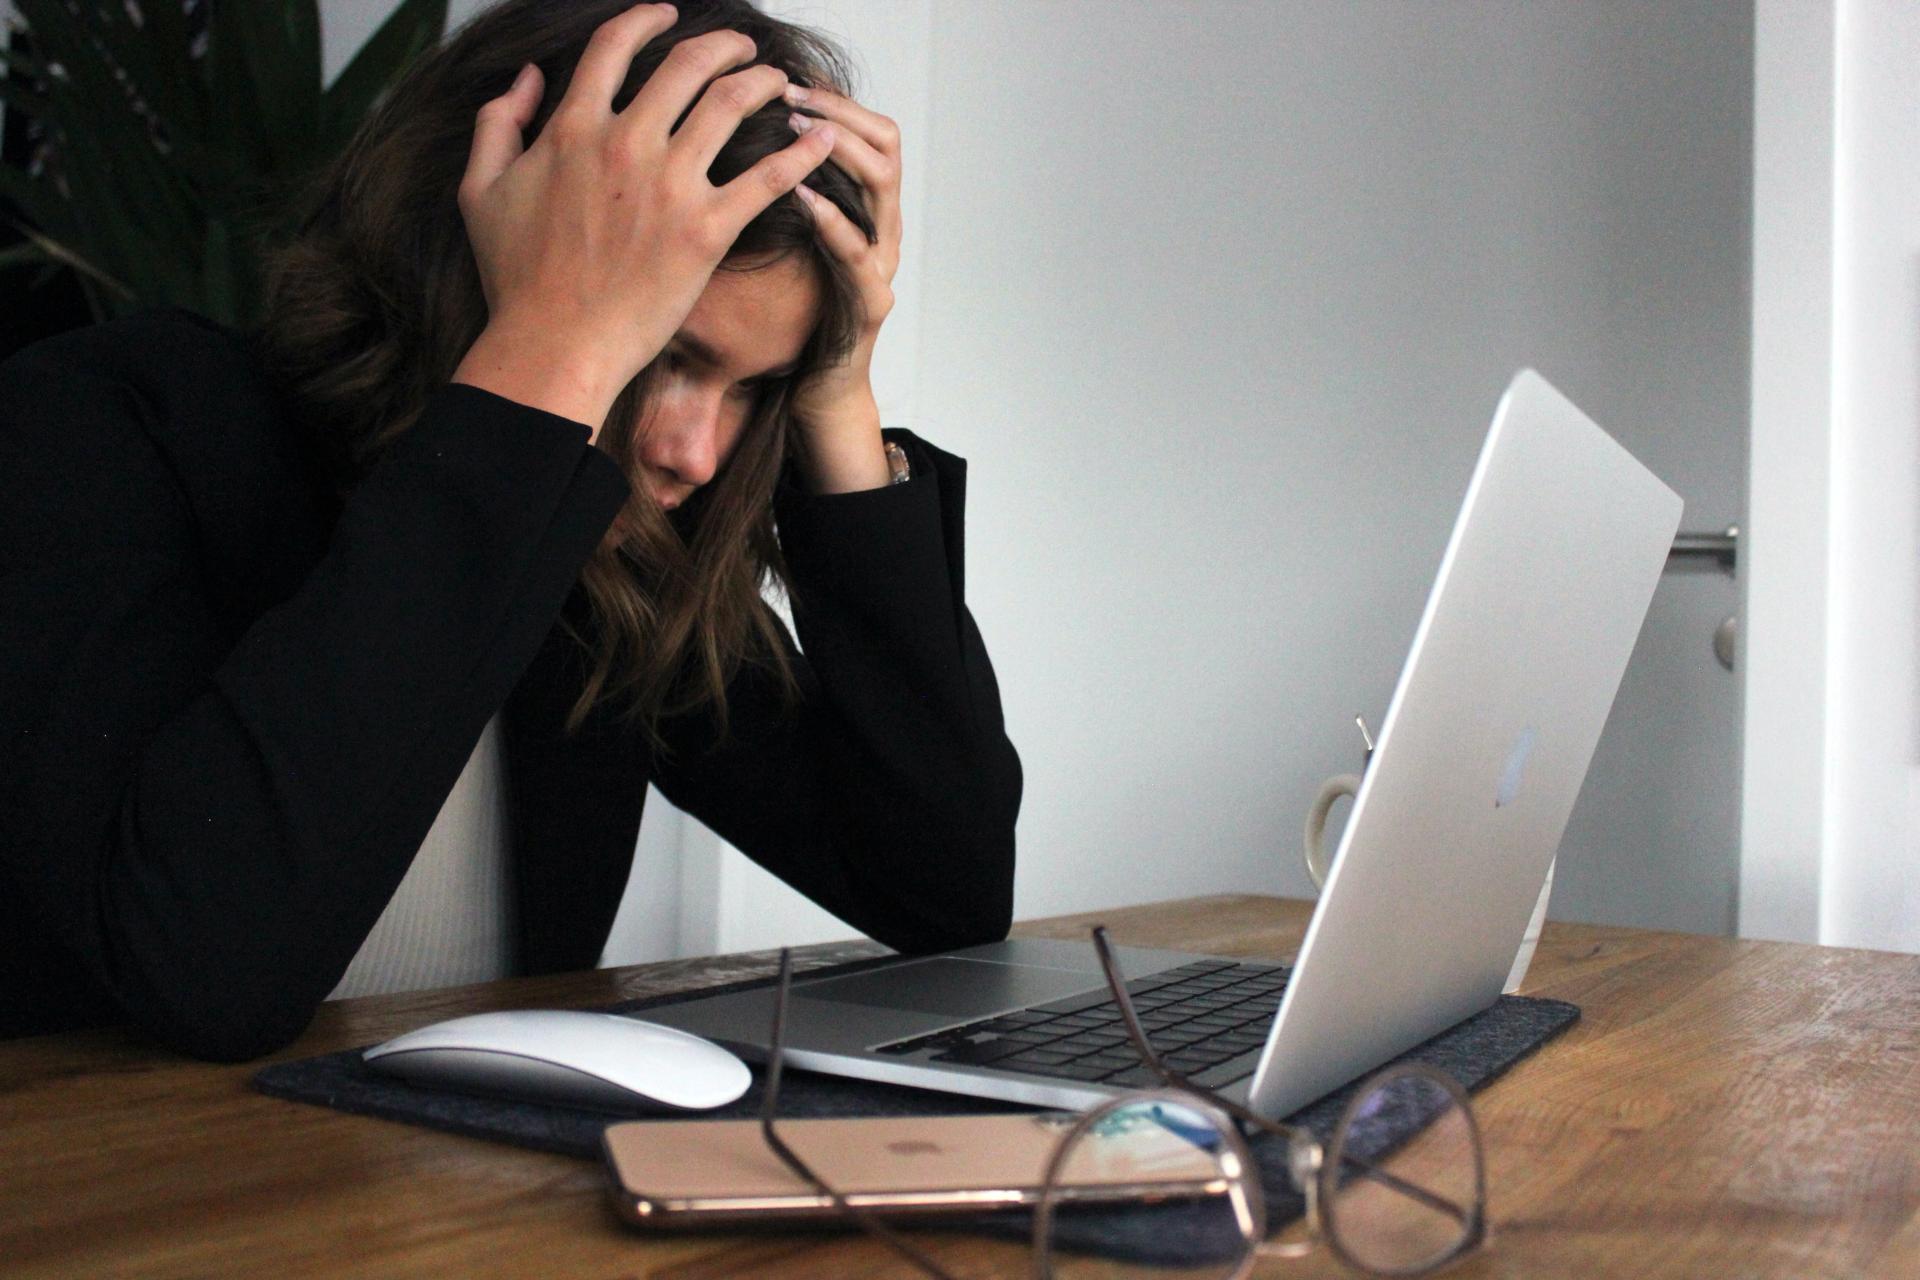 Un modelo computacional señala que la carga de trabajo es el factor que más estrés genera en los trabajadores